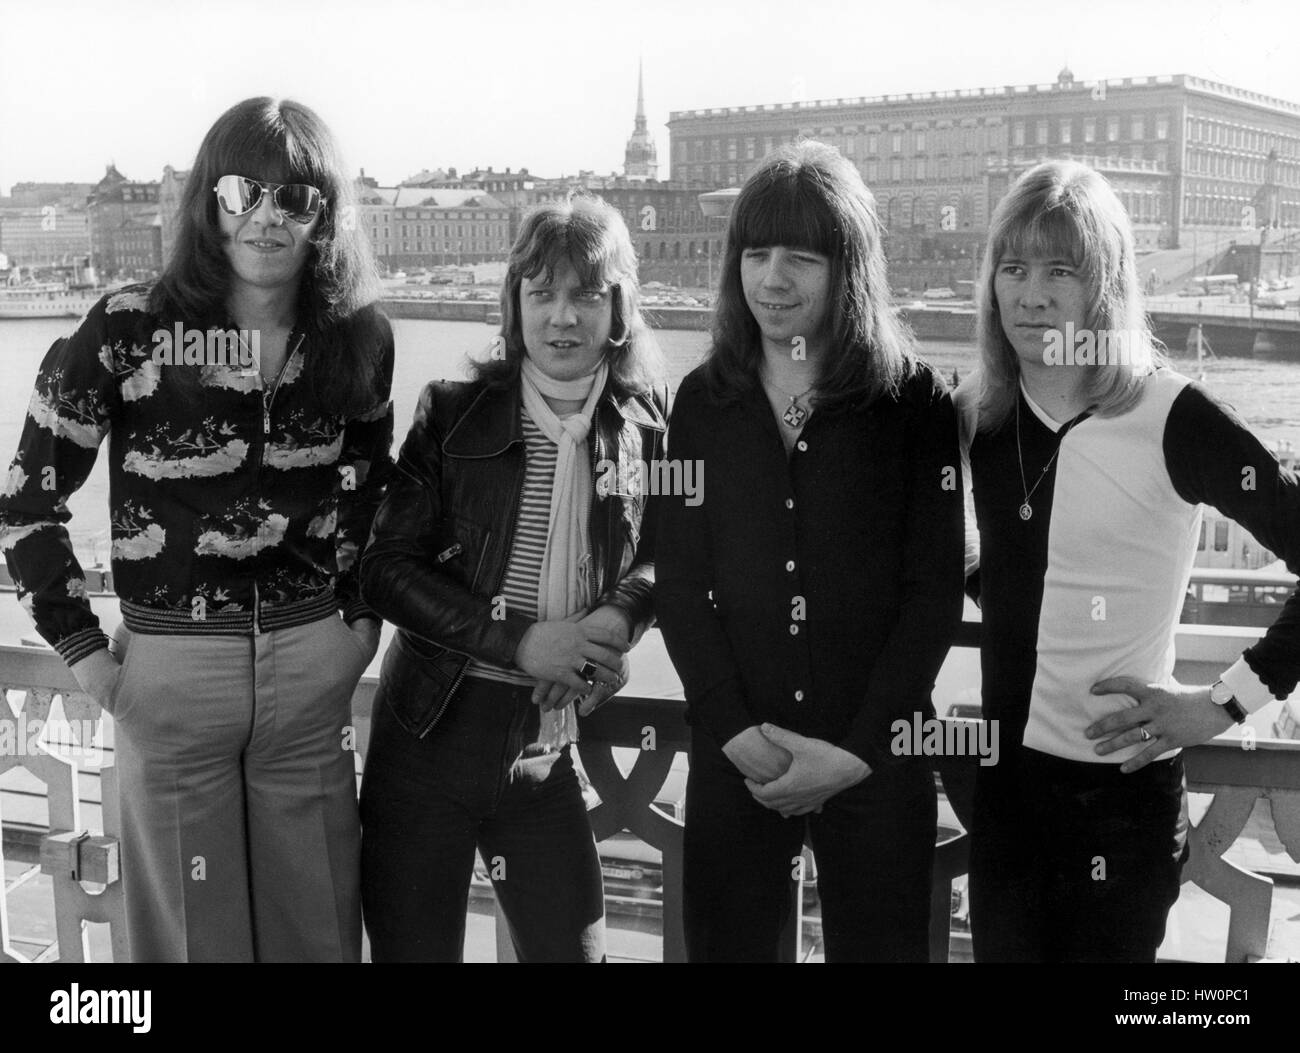 La Douce groupe pop britannique 1975 avec le Palais Royal de Stockholm en arrière-plan.membre Conolly-Andy Scott-Steve Bande Brian prêtre och Mick Tucker 1975 Banque D'Images